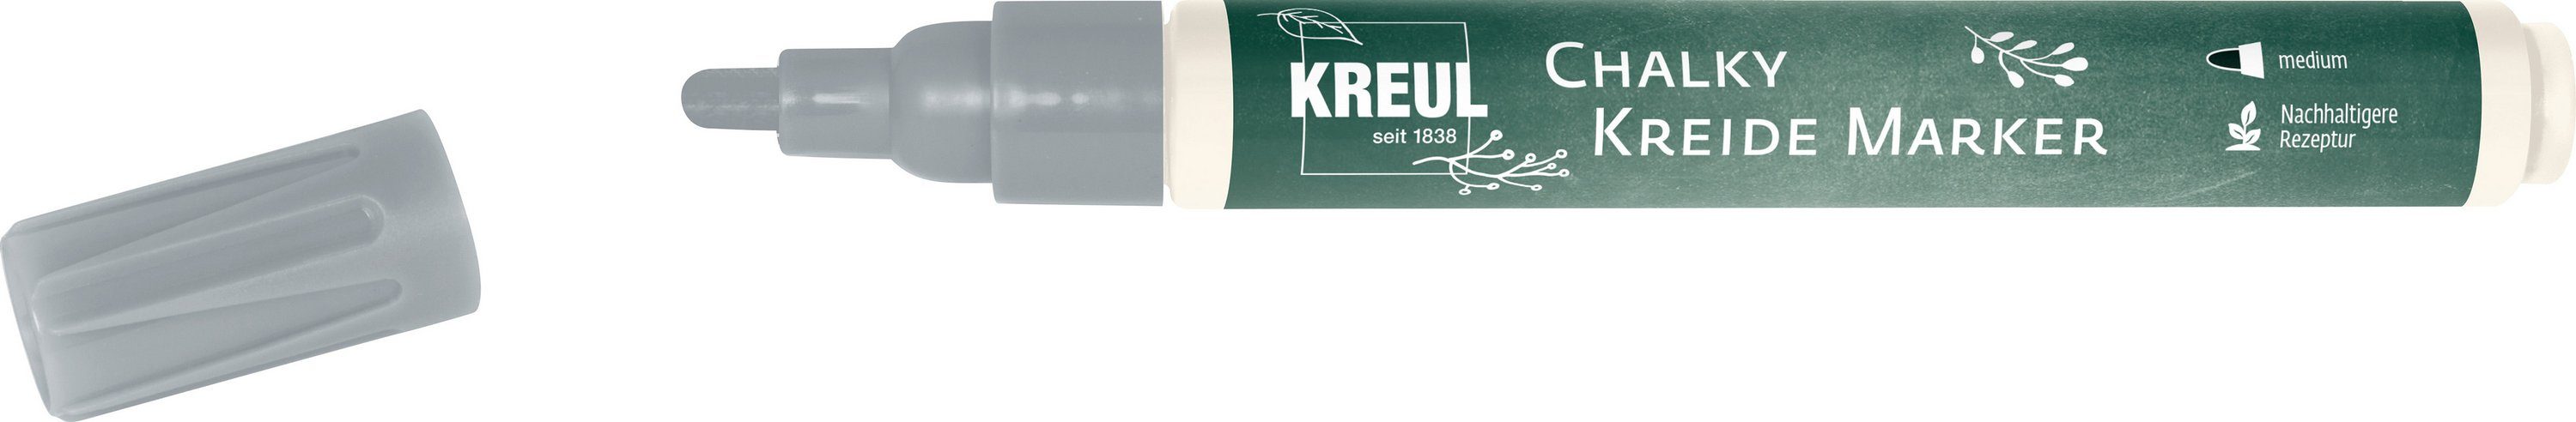 Kreul Kreidemarker Chalky, 2-3mm Strichstärke Show Silver